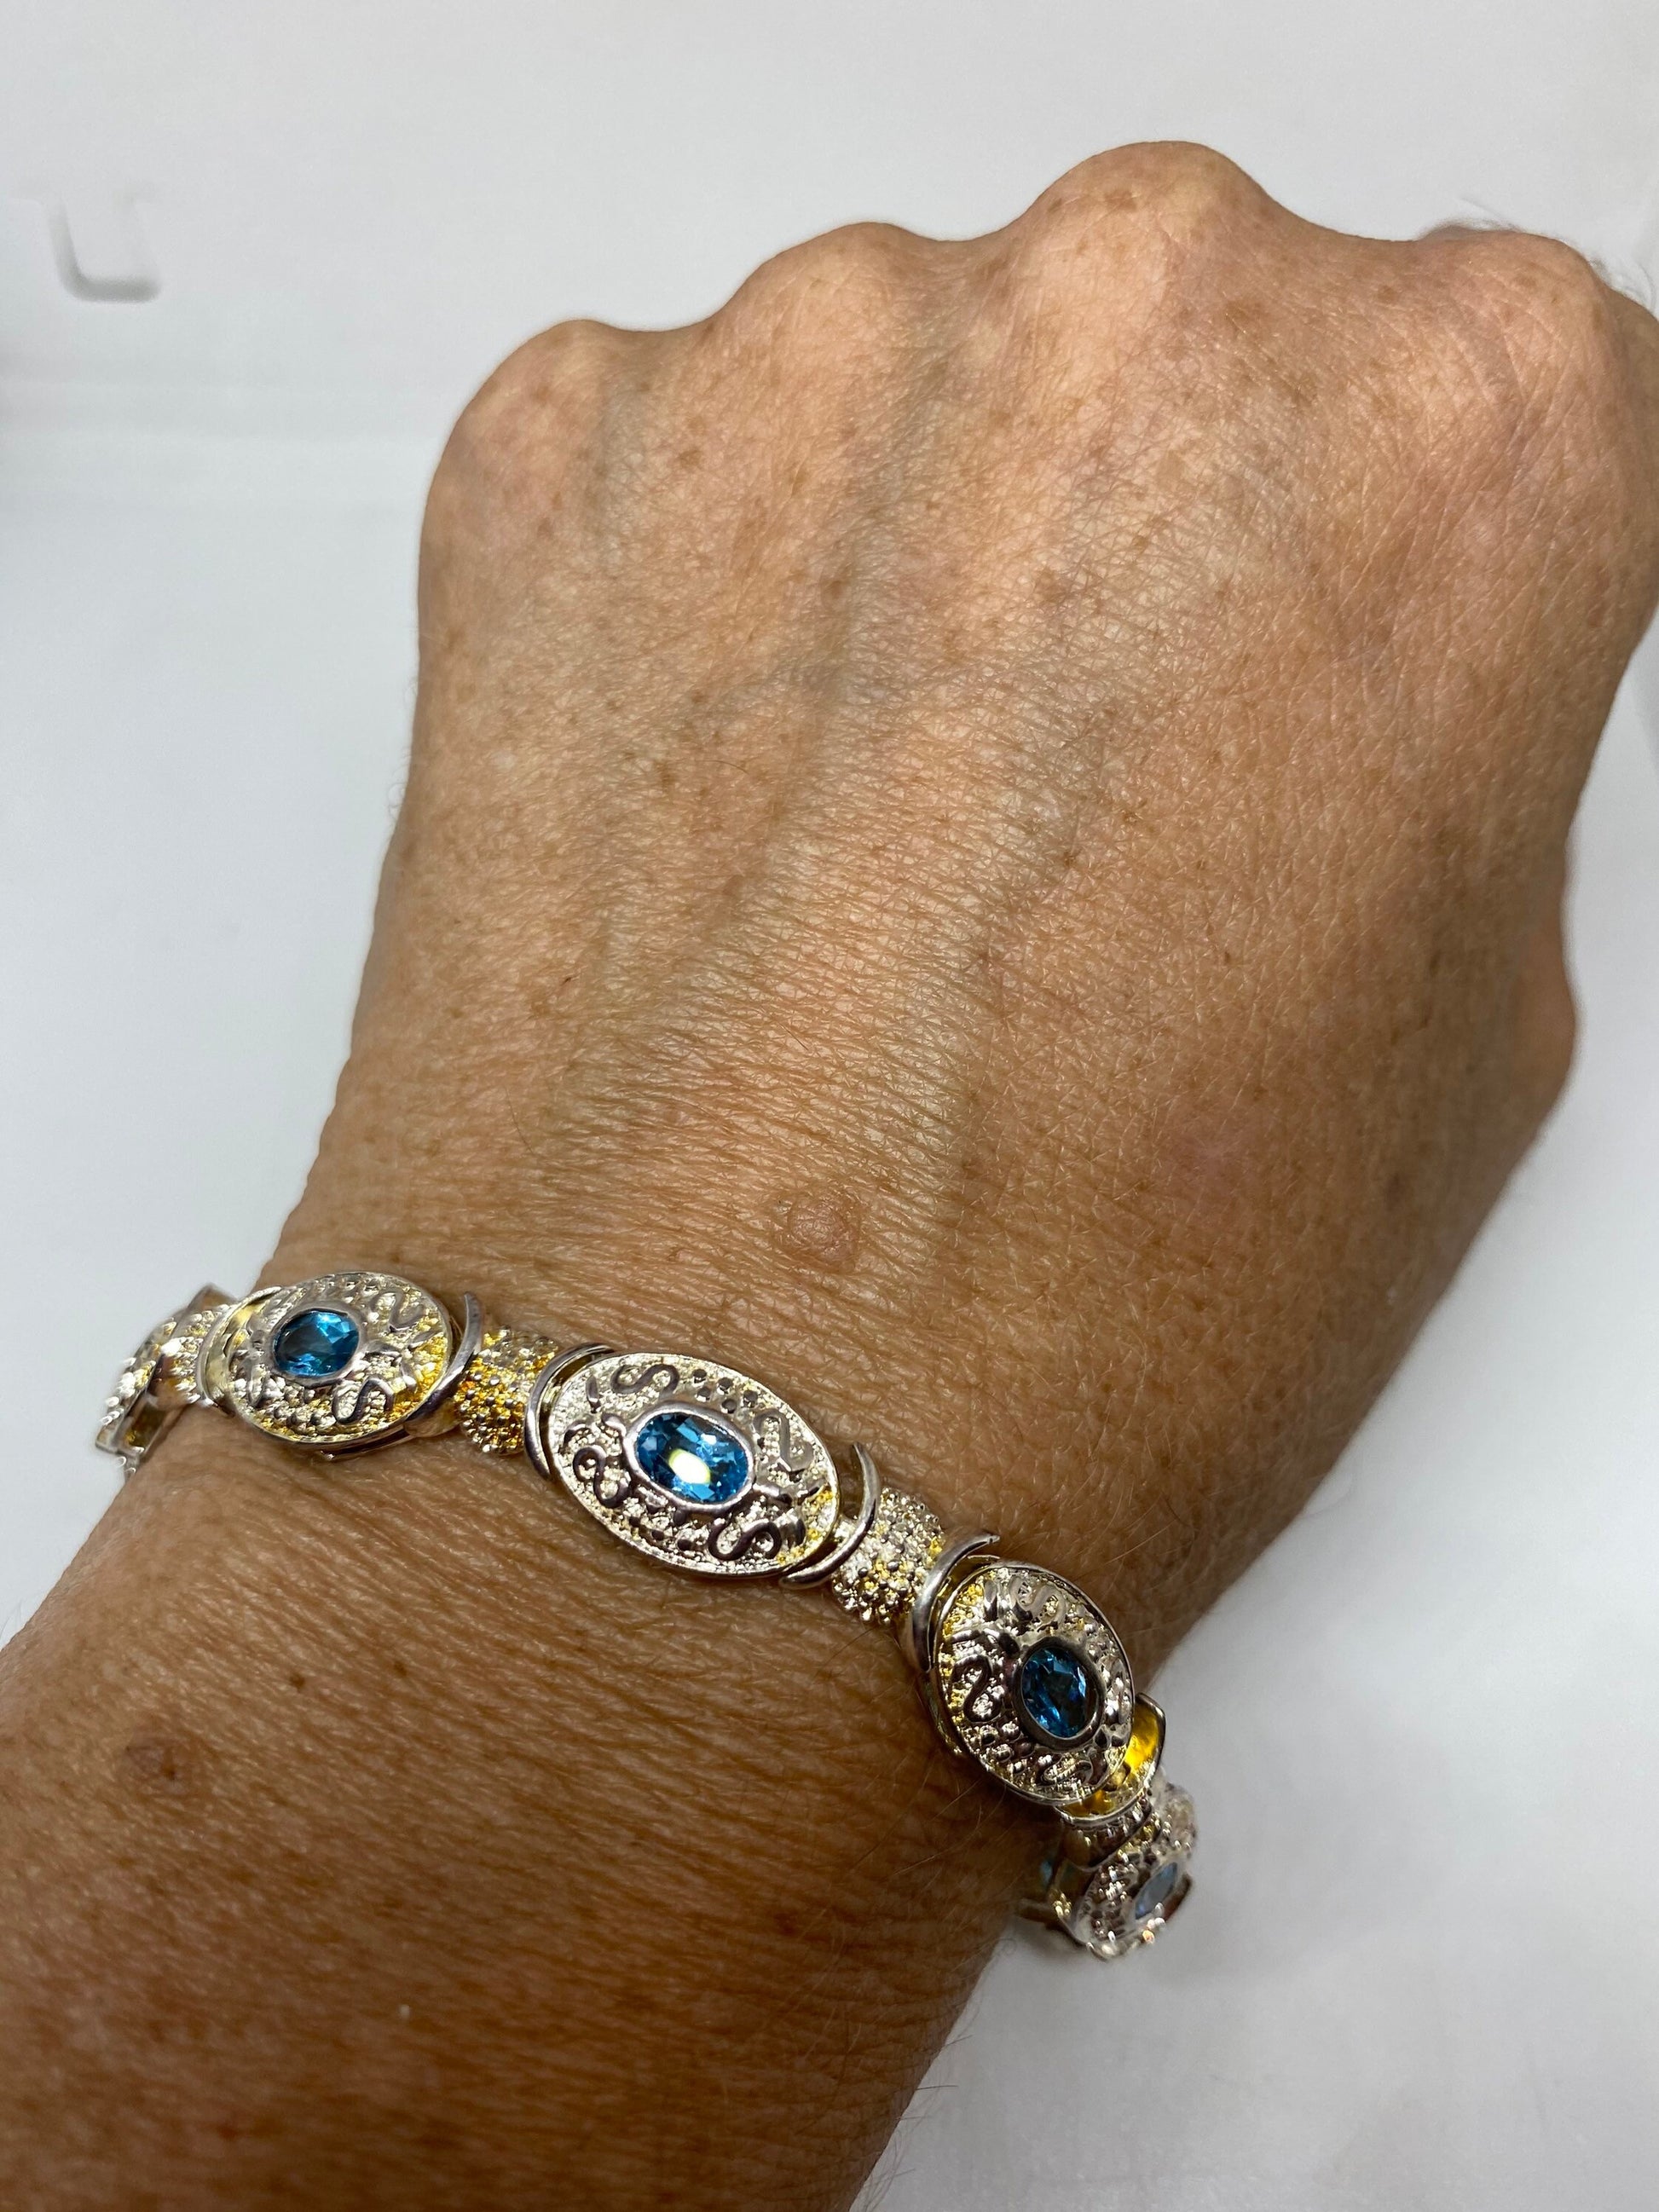 Vintage Blue Topaz Bracelet 925 Sterling Silver 7.5 Inch Tennis